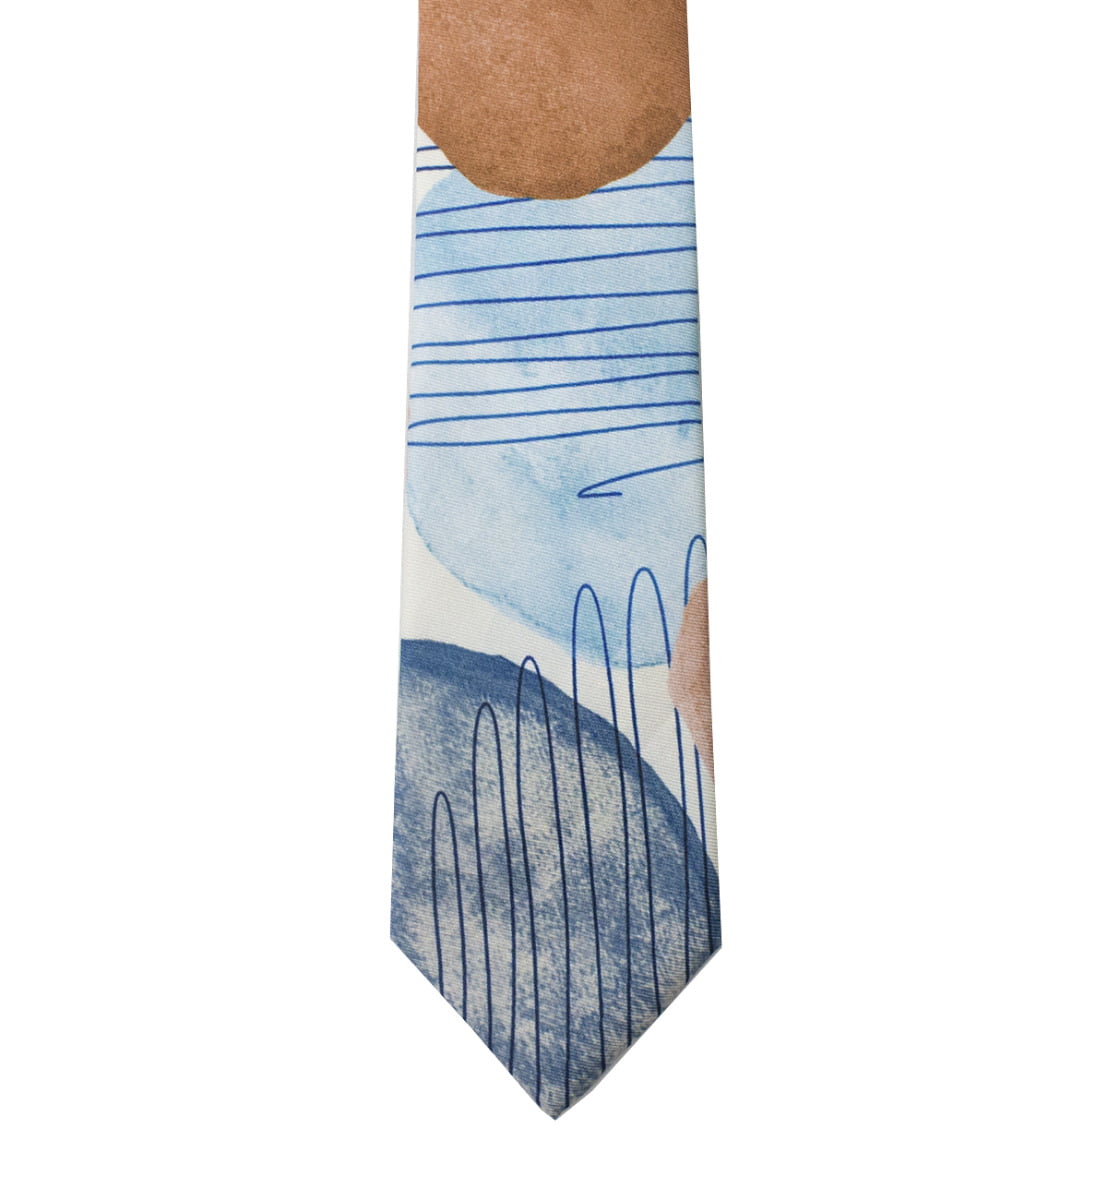 Cravatta uomo fantasia multicolor 6cm di larghezza made in italy